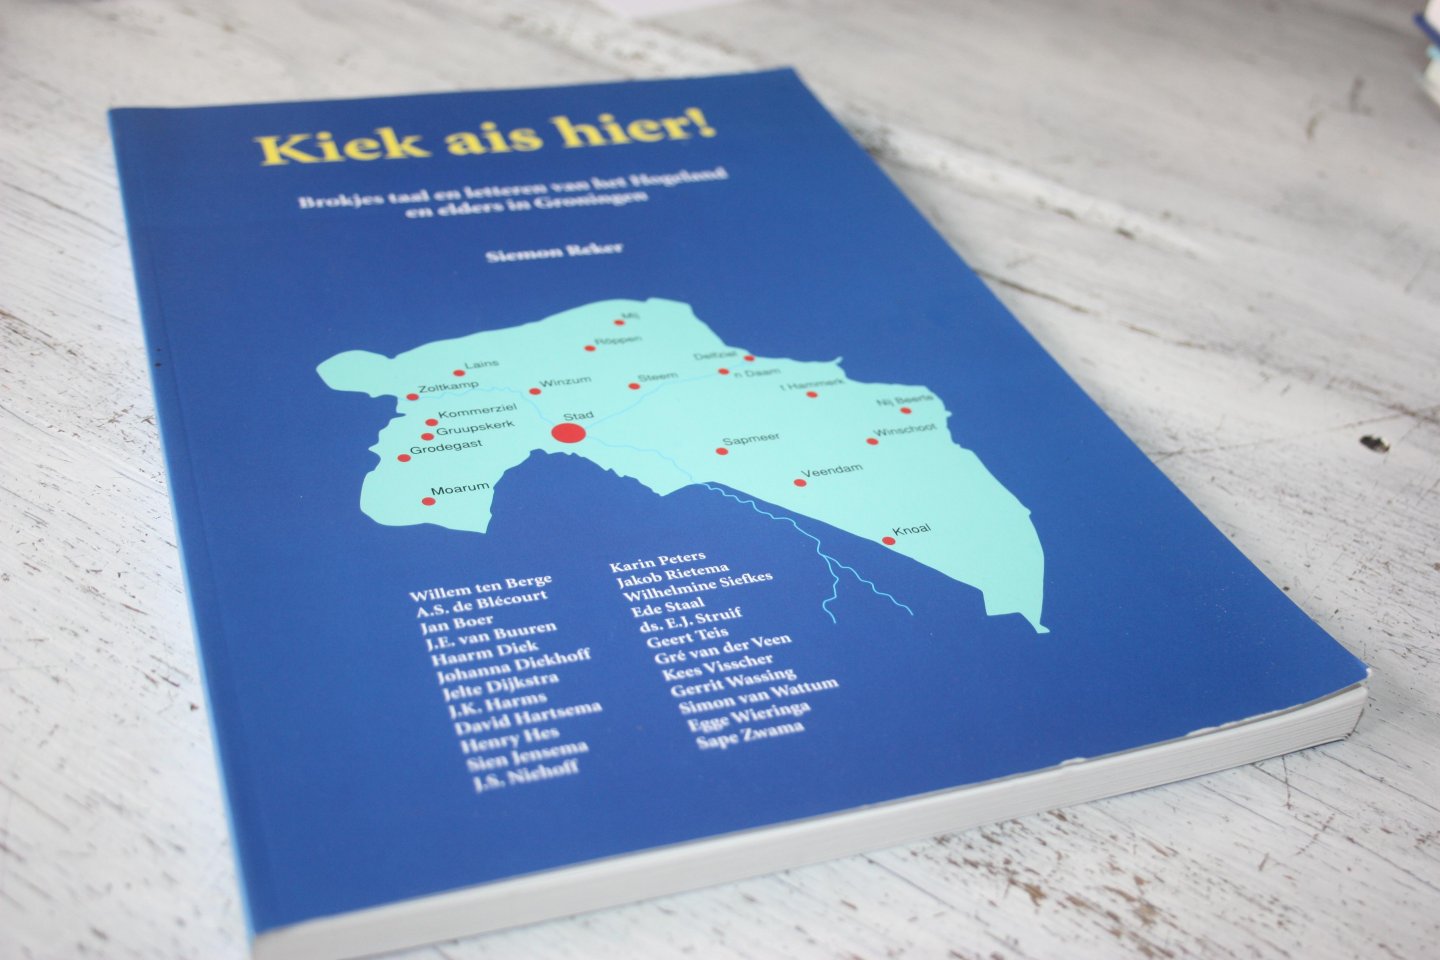 Reker, Siemon - KIEK AIS HIER! brokjes taal en letteren van het Hogeland en elders in Groningen.